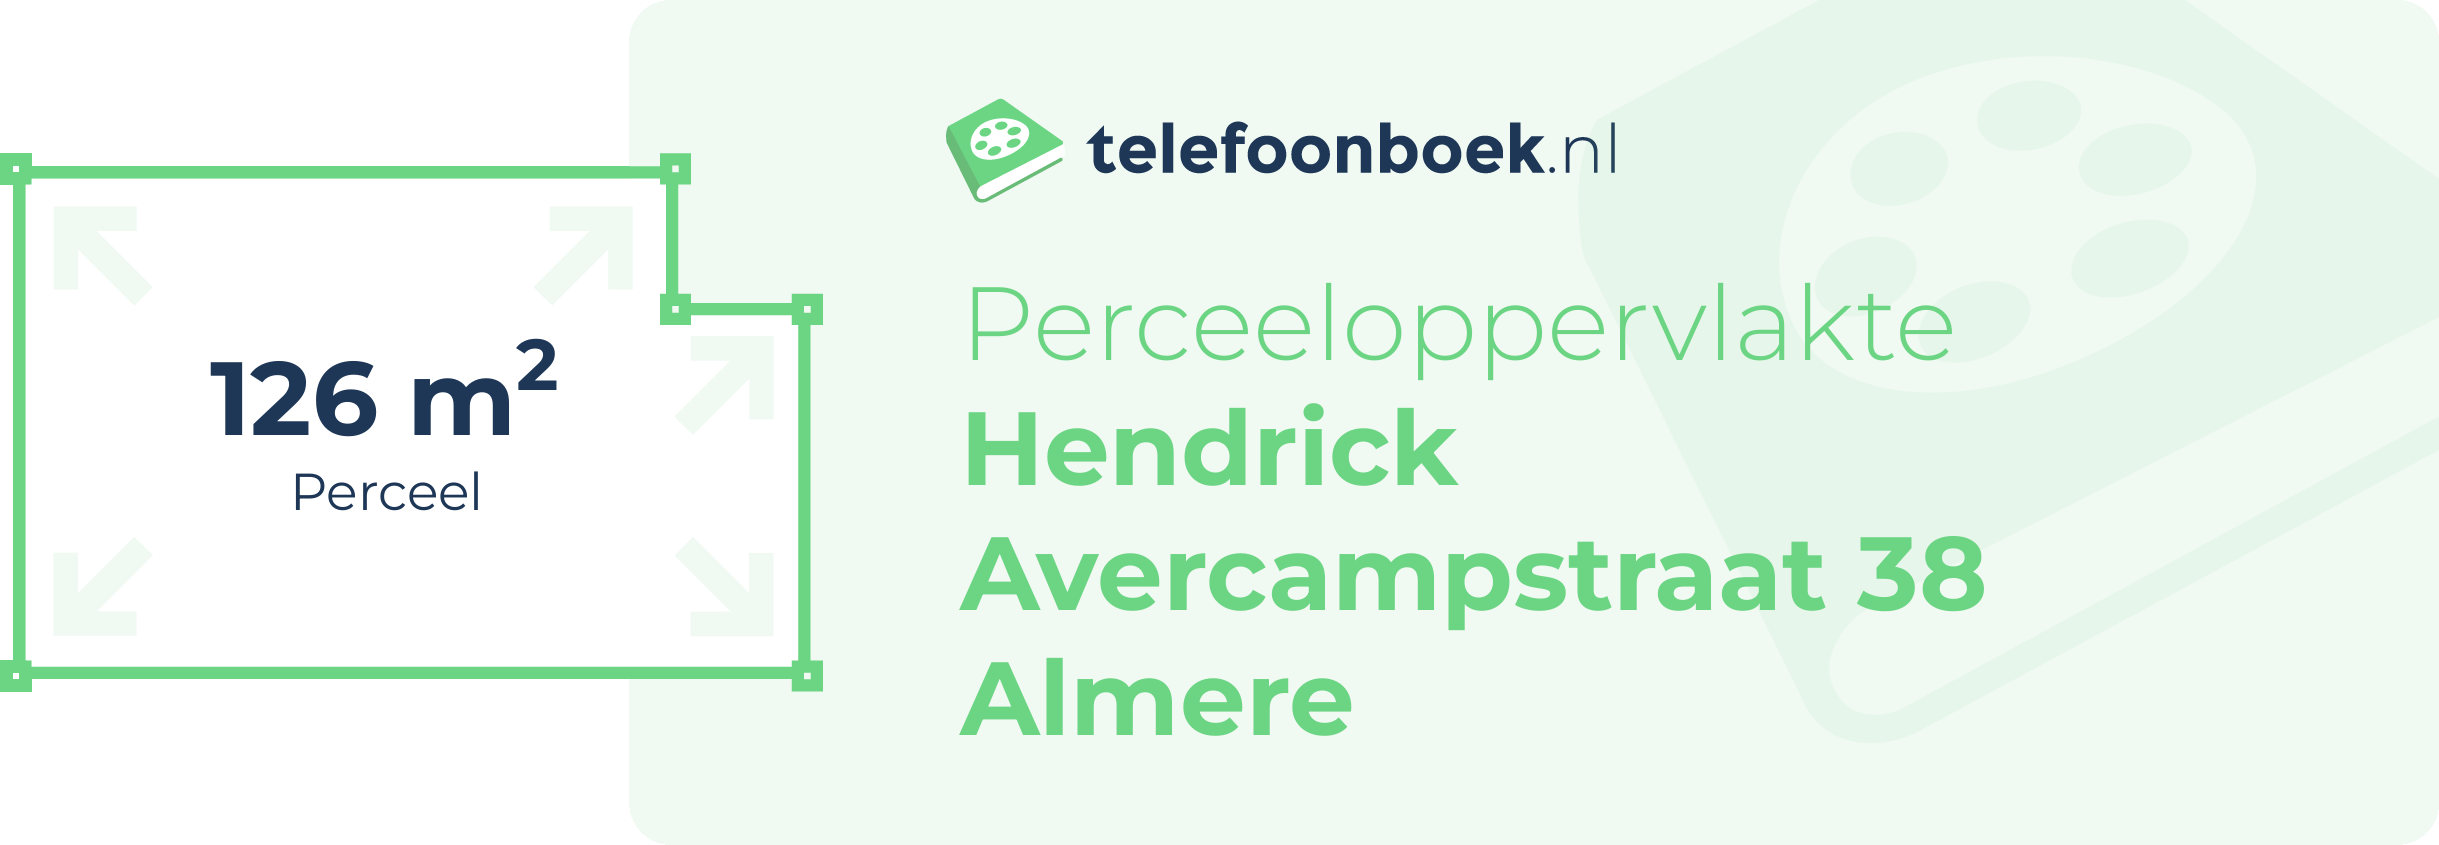 Perceeloppervlakte Hendrick Avercampstraat 38 Almere